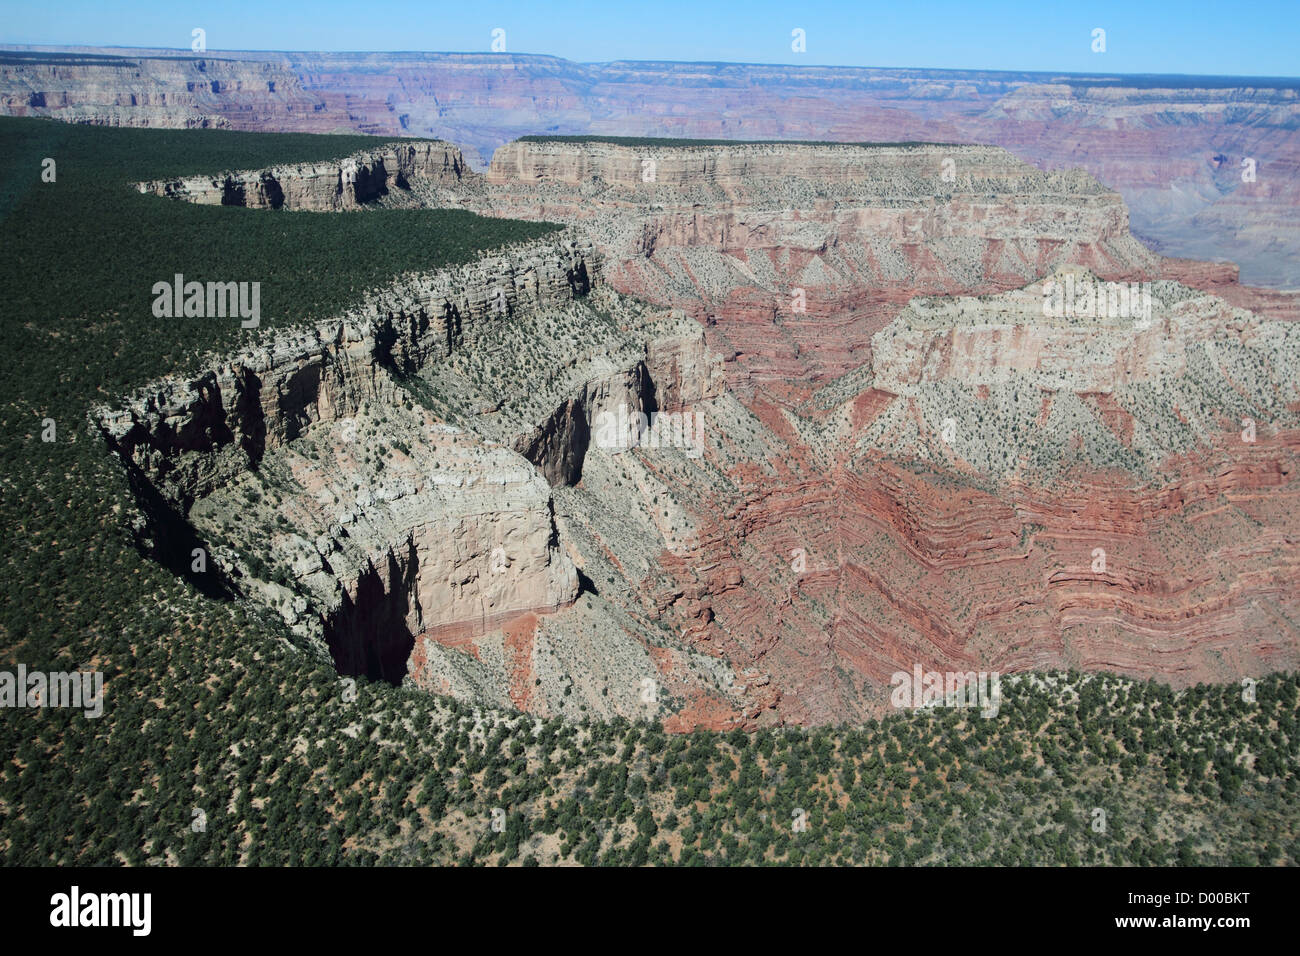 Une vue aérienne du Grand Canyon en Arizona, USA. Le Colorado a creusé un profond canyon à travers des millions d'années. Banque D'Images